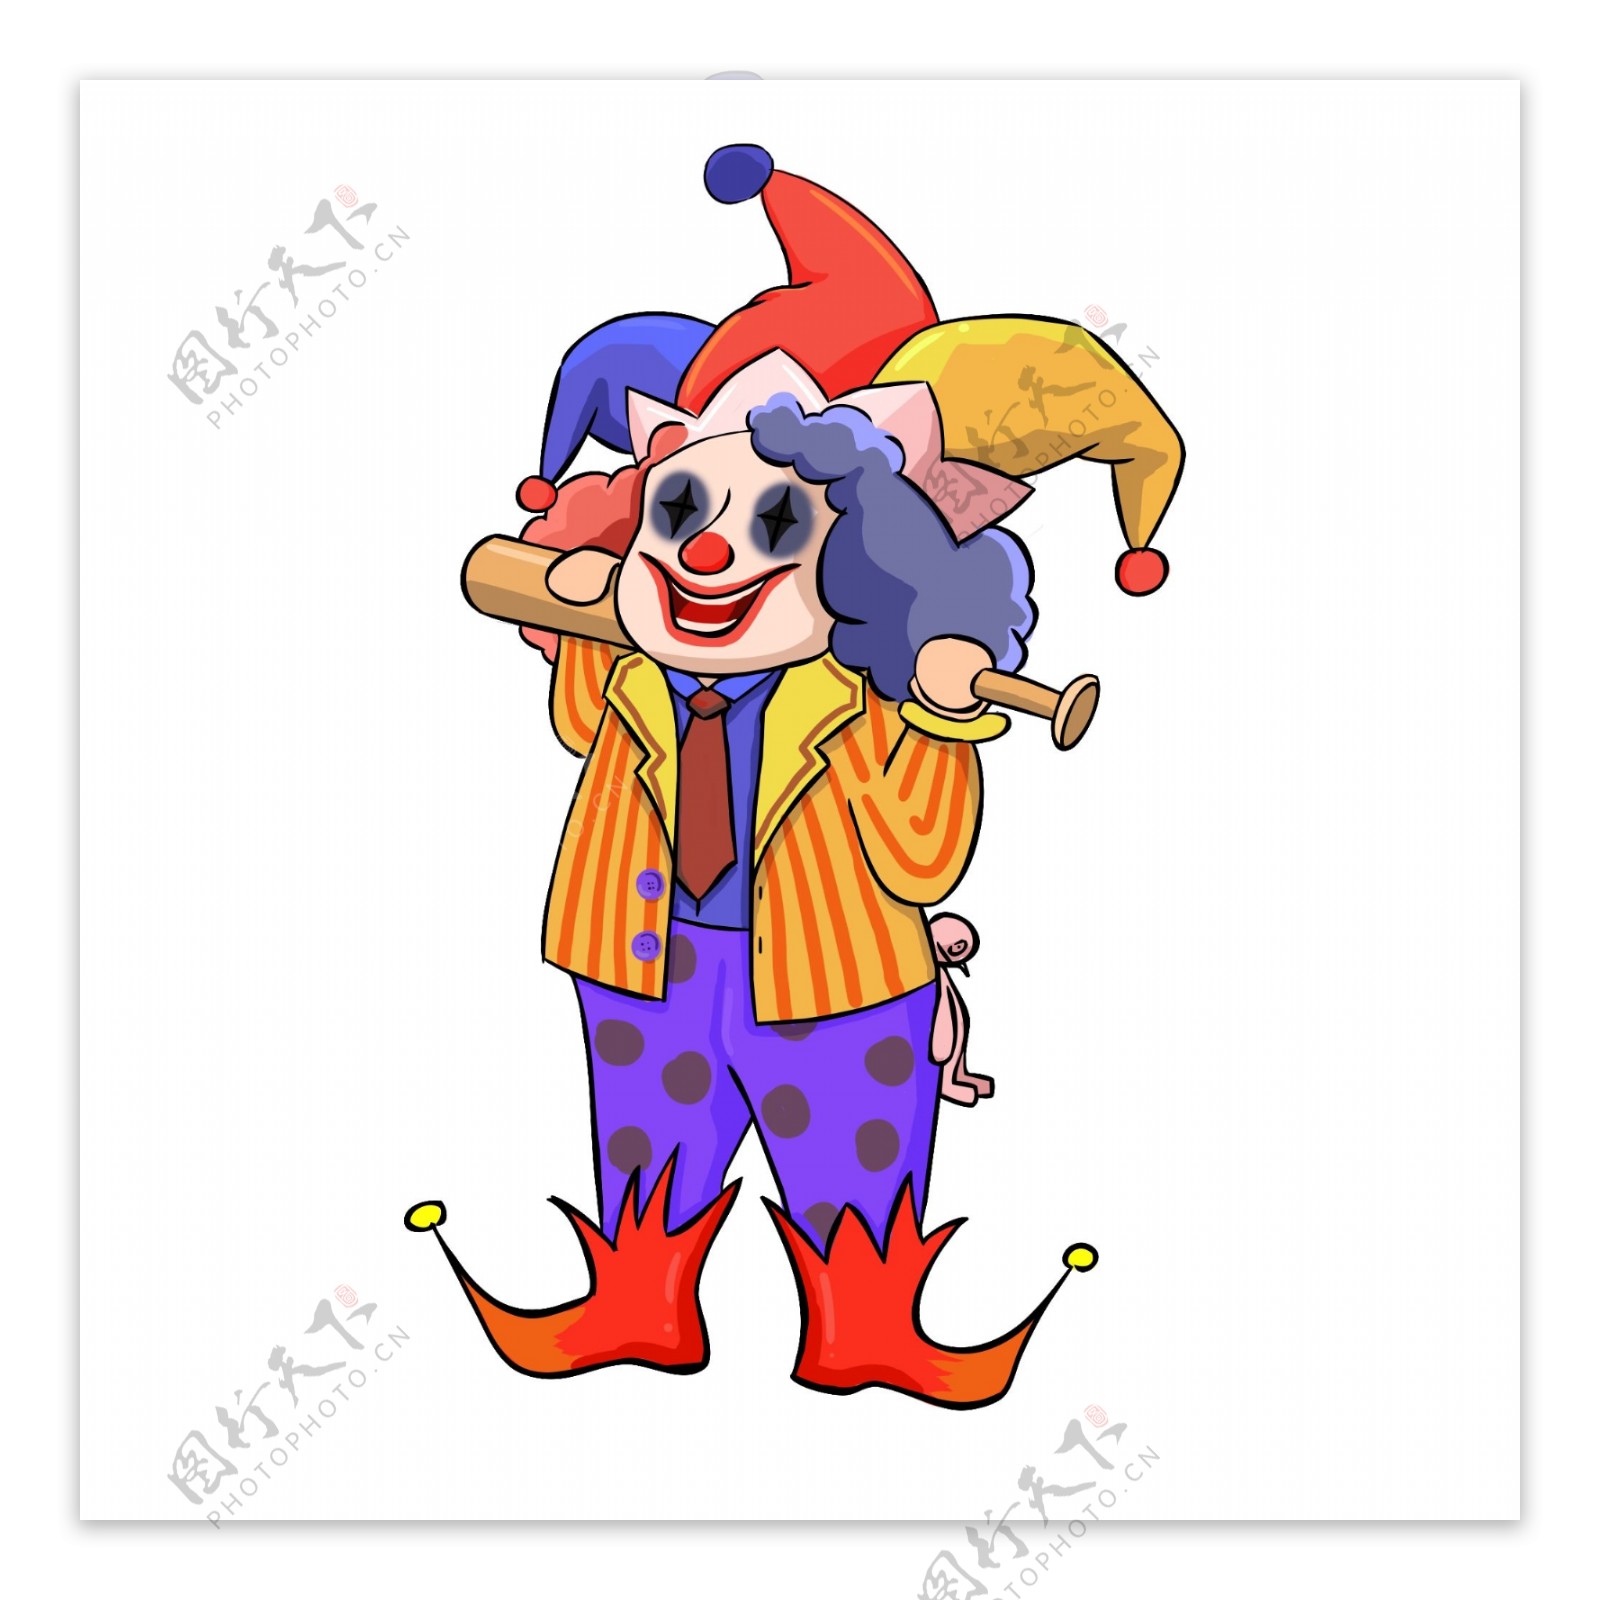 愚人节手绘卡通棒球棍可爱马戏团小丑